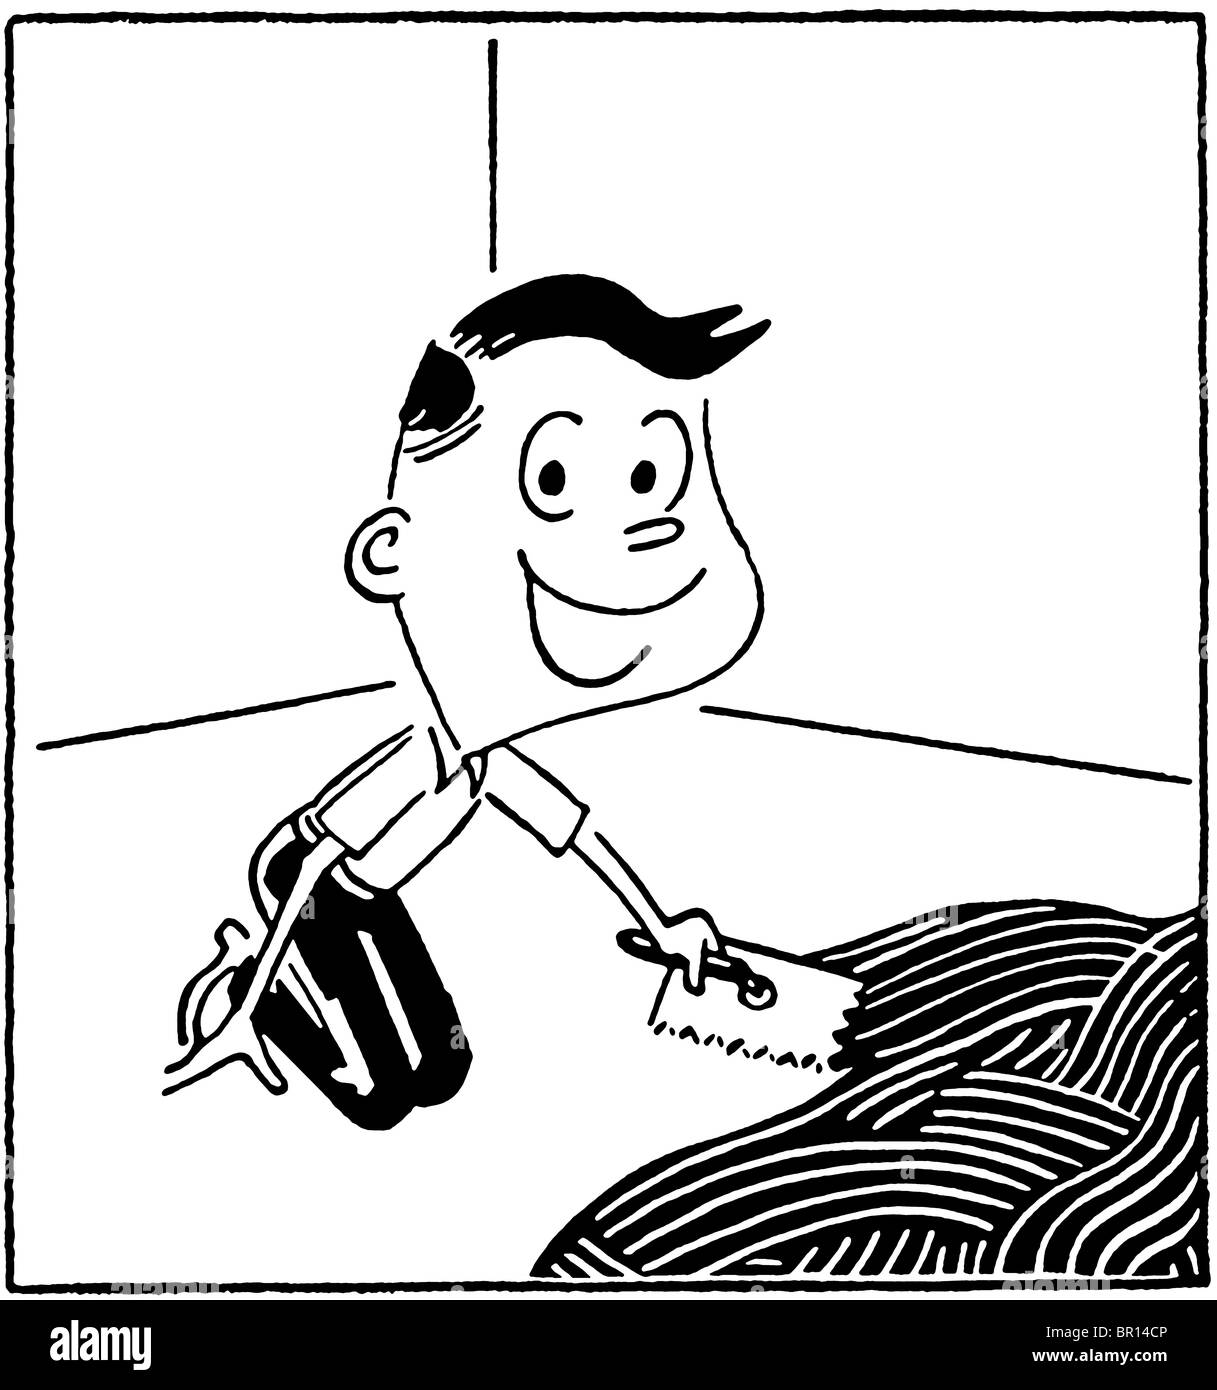 Une version noir et blanc d'un cartoon style dessin d'un jeune garçon Banque D'Images